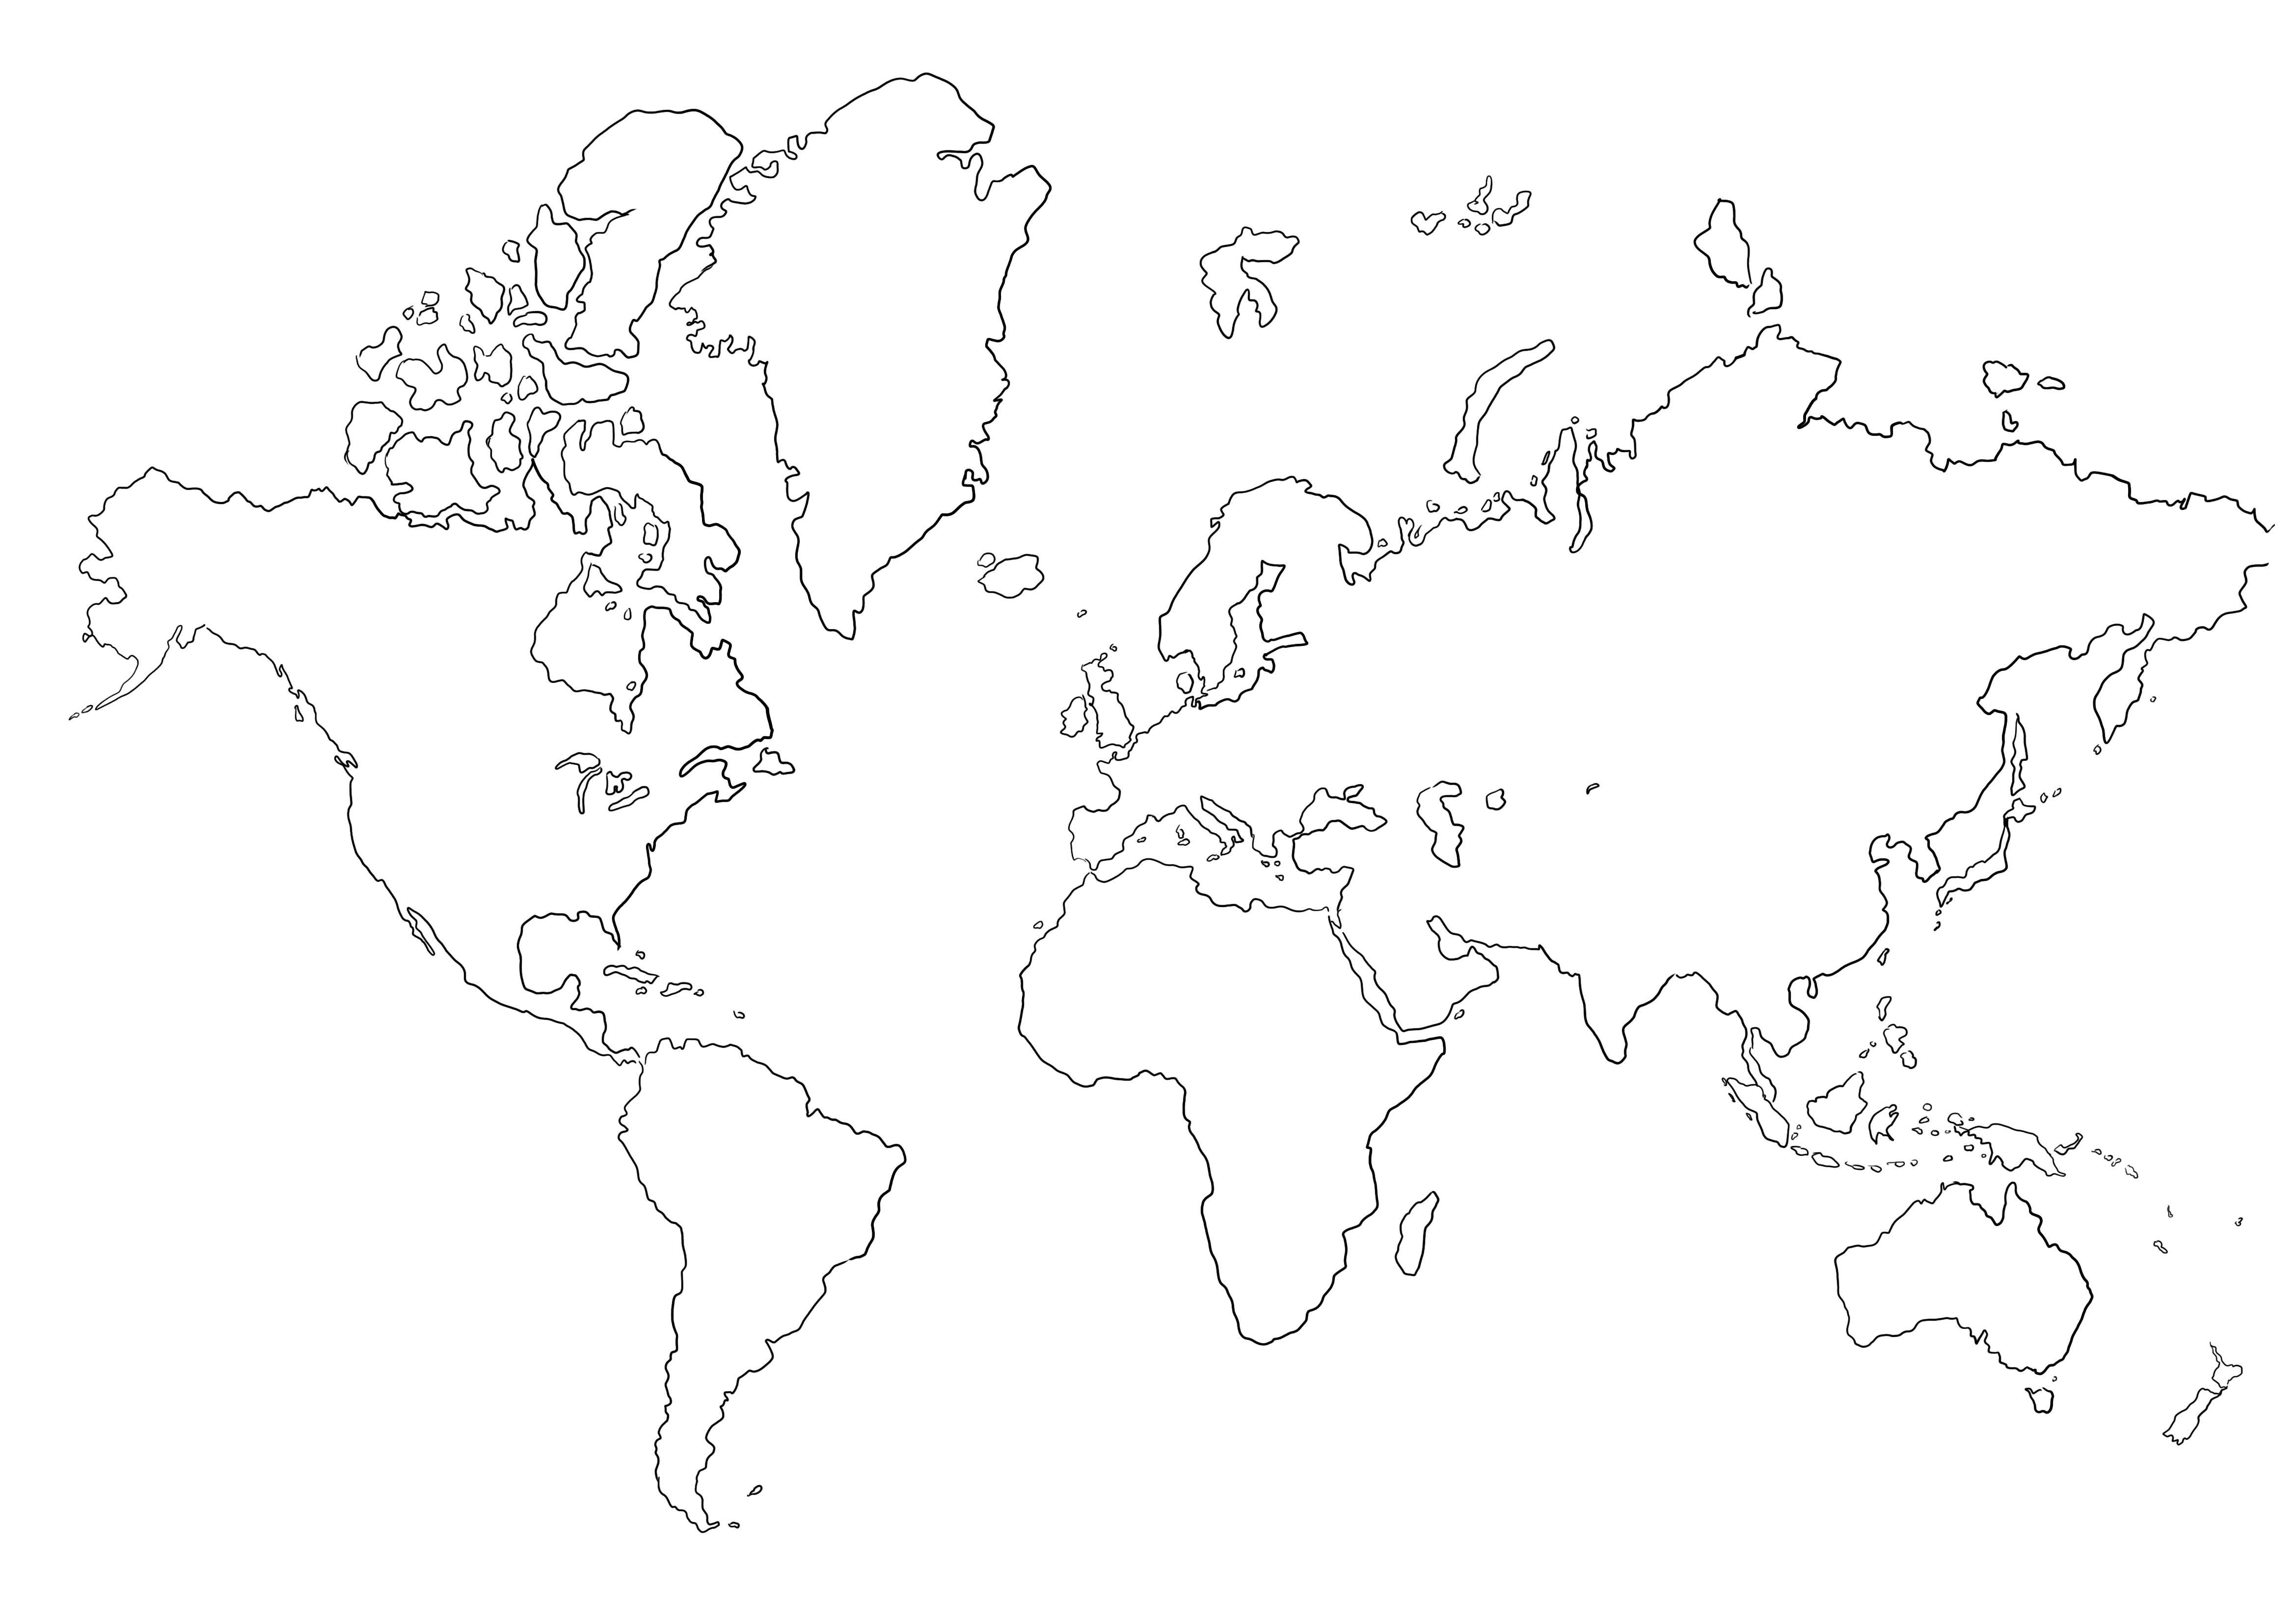 Leere Weltkarte zum Ausmalen ohne Bilder zum Ausdrucken oder Speichern für später